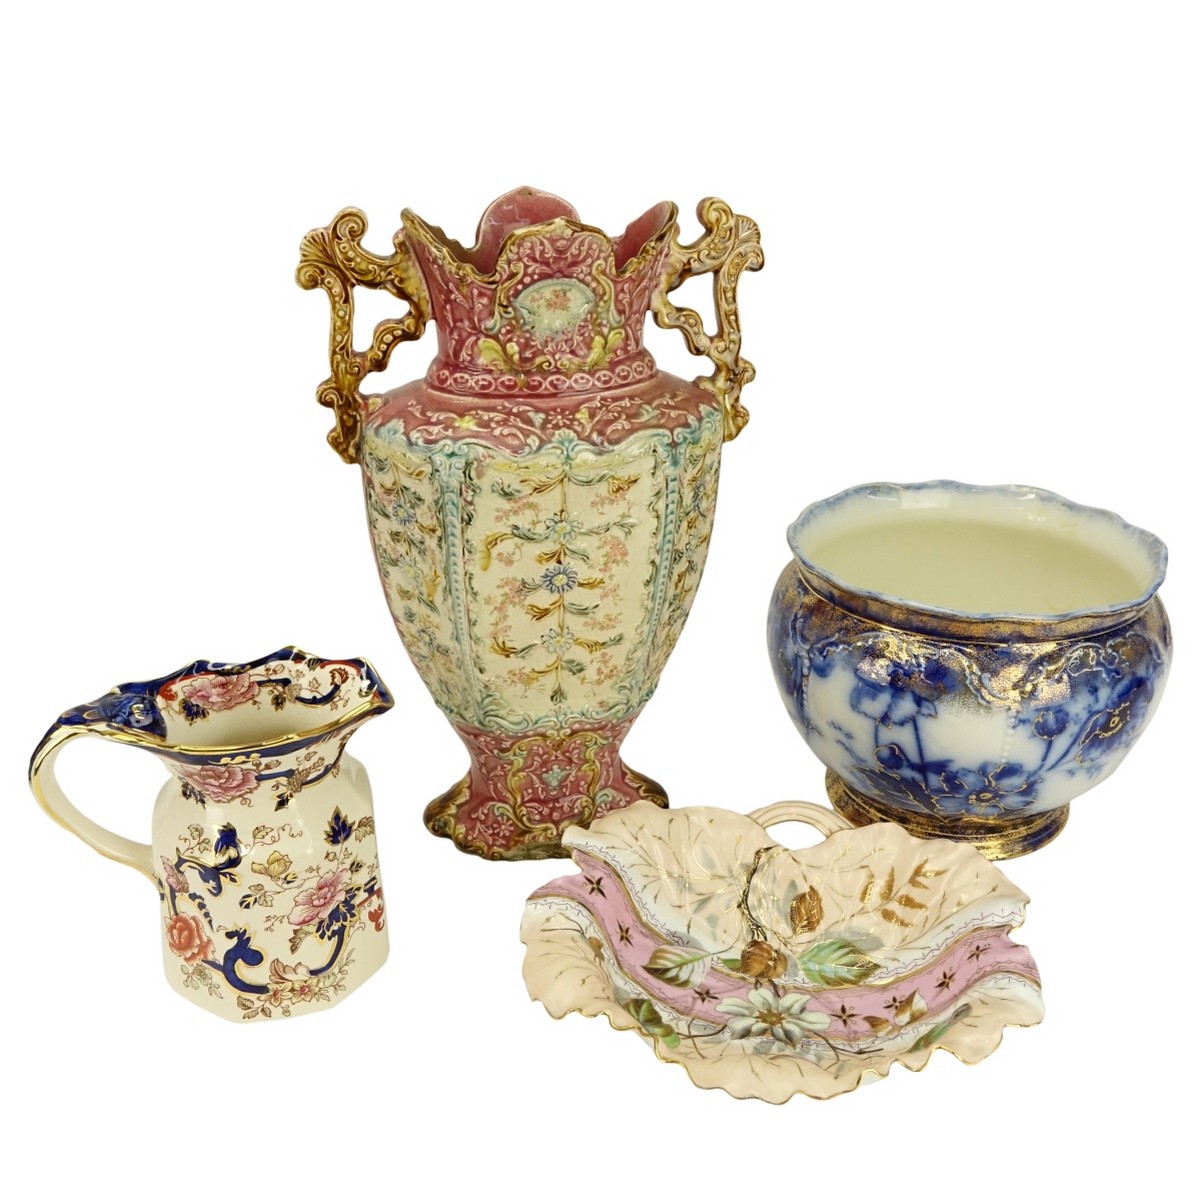 Four (4) Decorative Porcelain Table Top Items